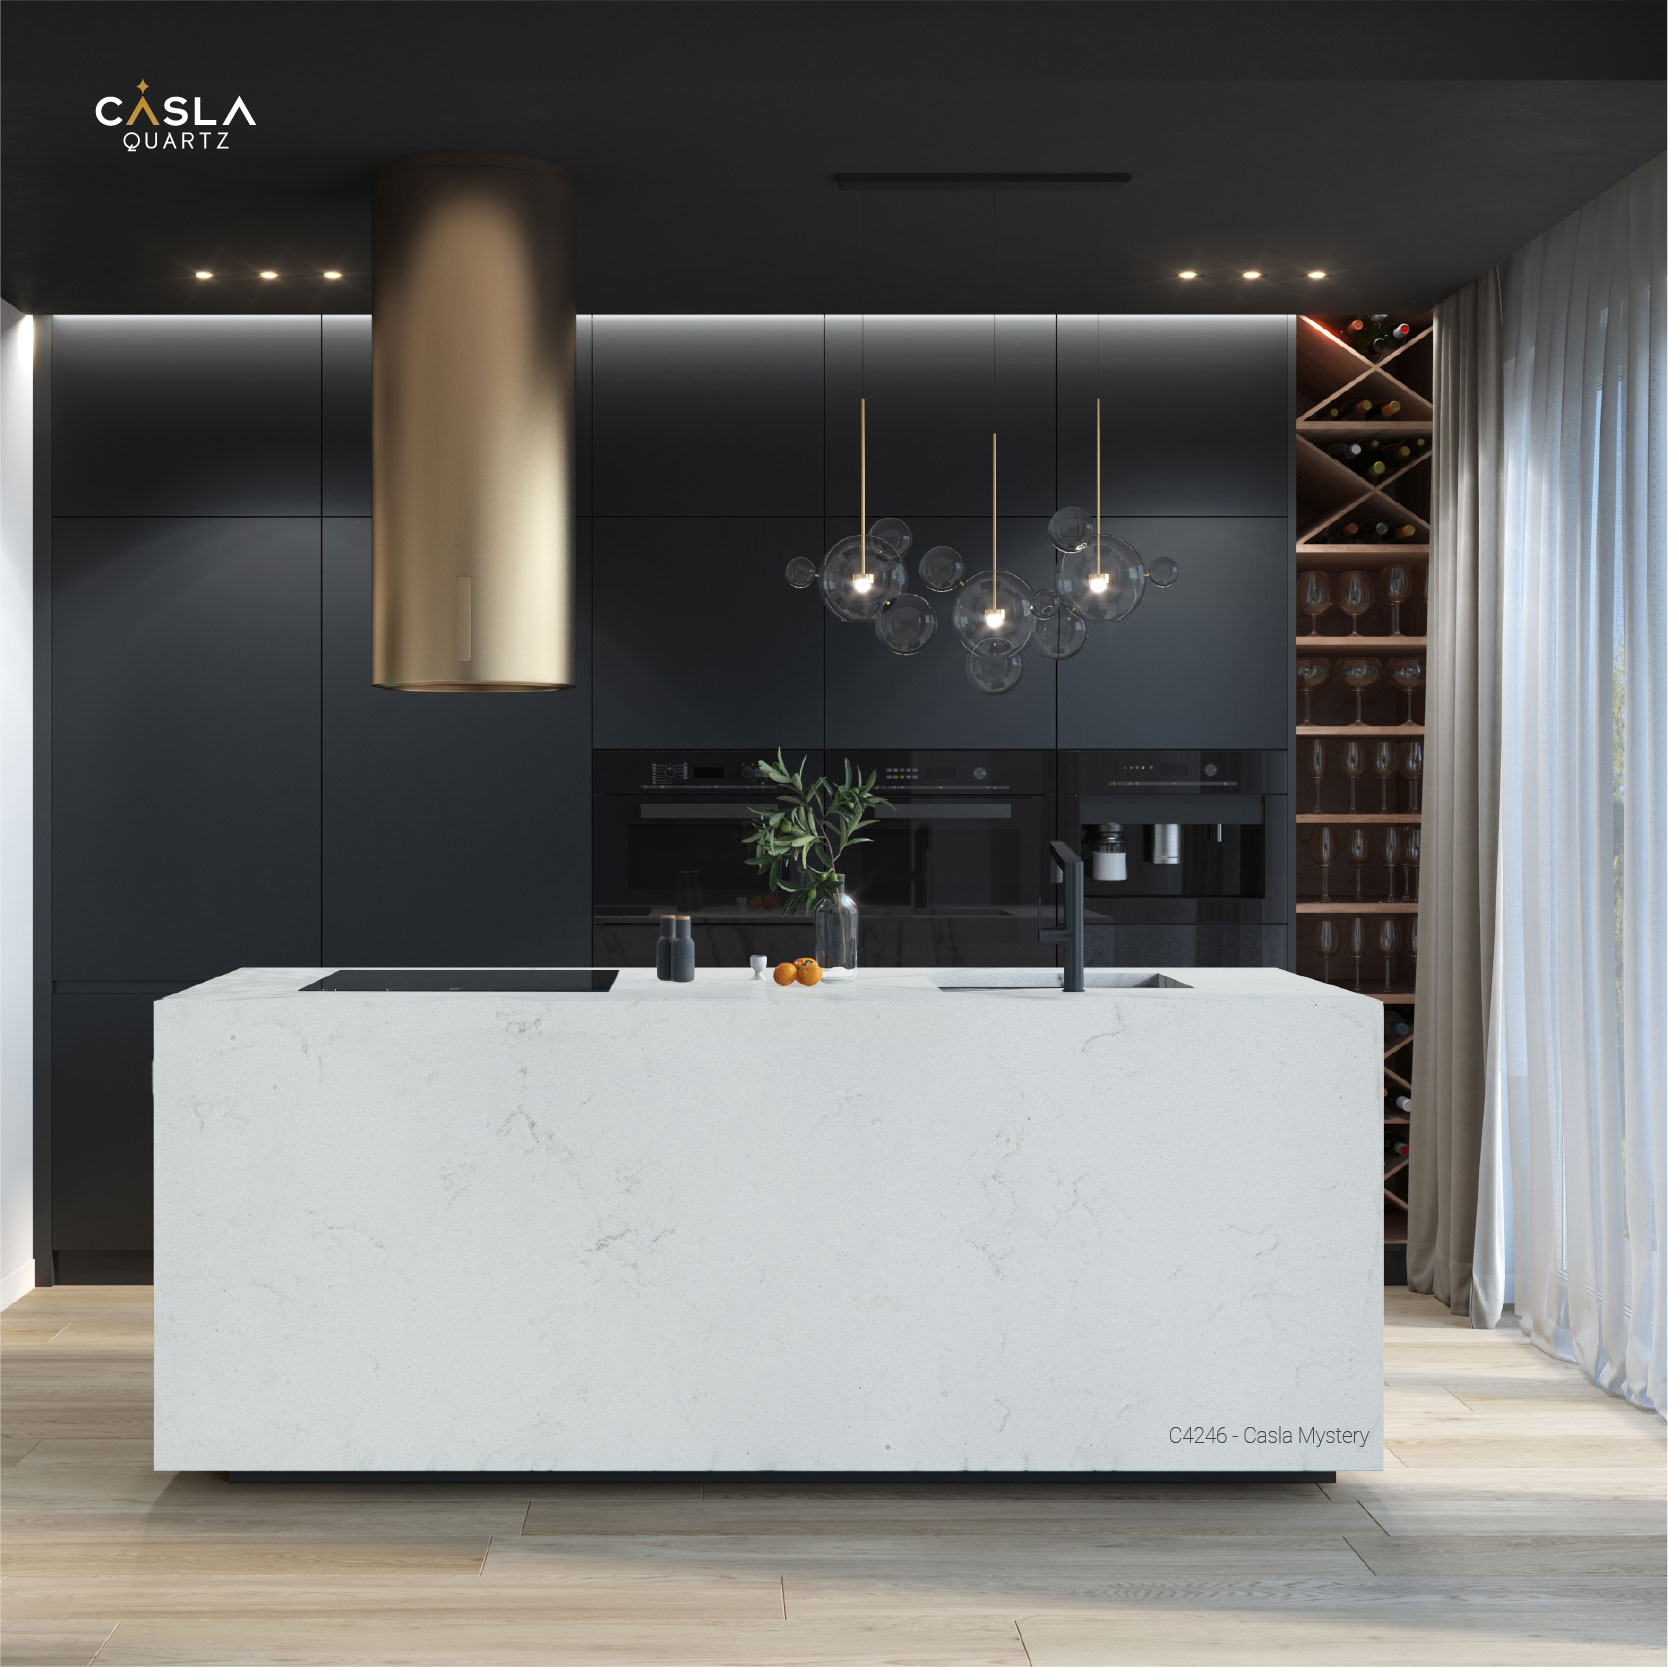 Đá Casla Mystery kết hợp cùng gam màu tối trong phong cách tối giản, đây là một trong những cách trang trí nhà bếp đẹp mà đơn giản nhất.